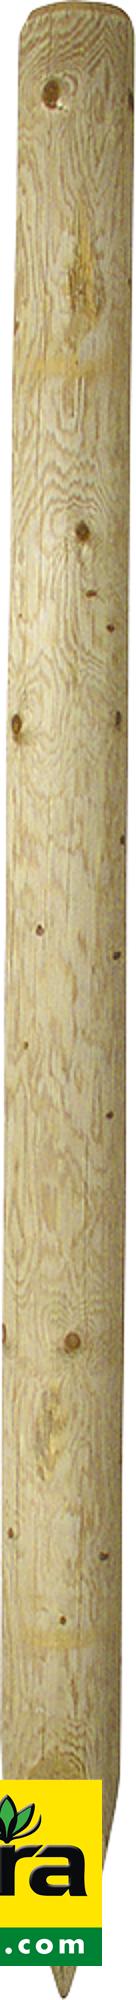 Holzpfosten, 2,50 m, imprägniert, gespitzt, d=16-18 cm